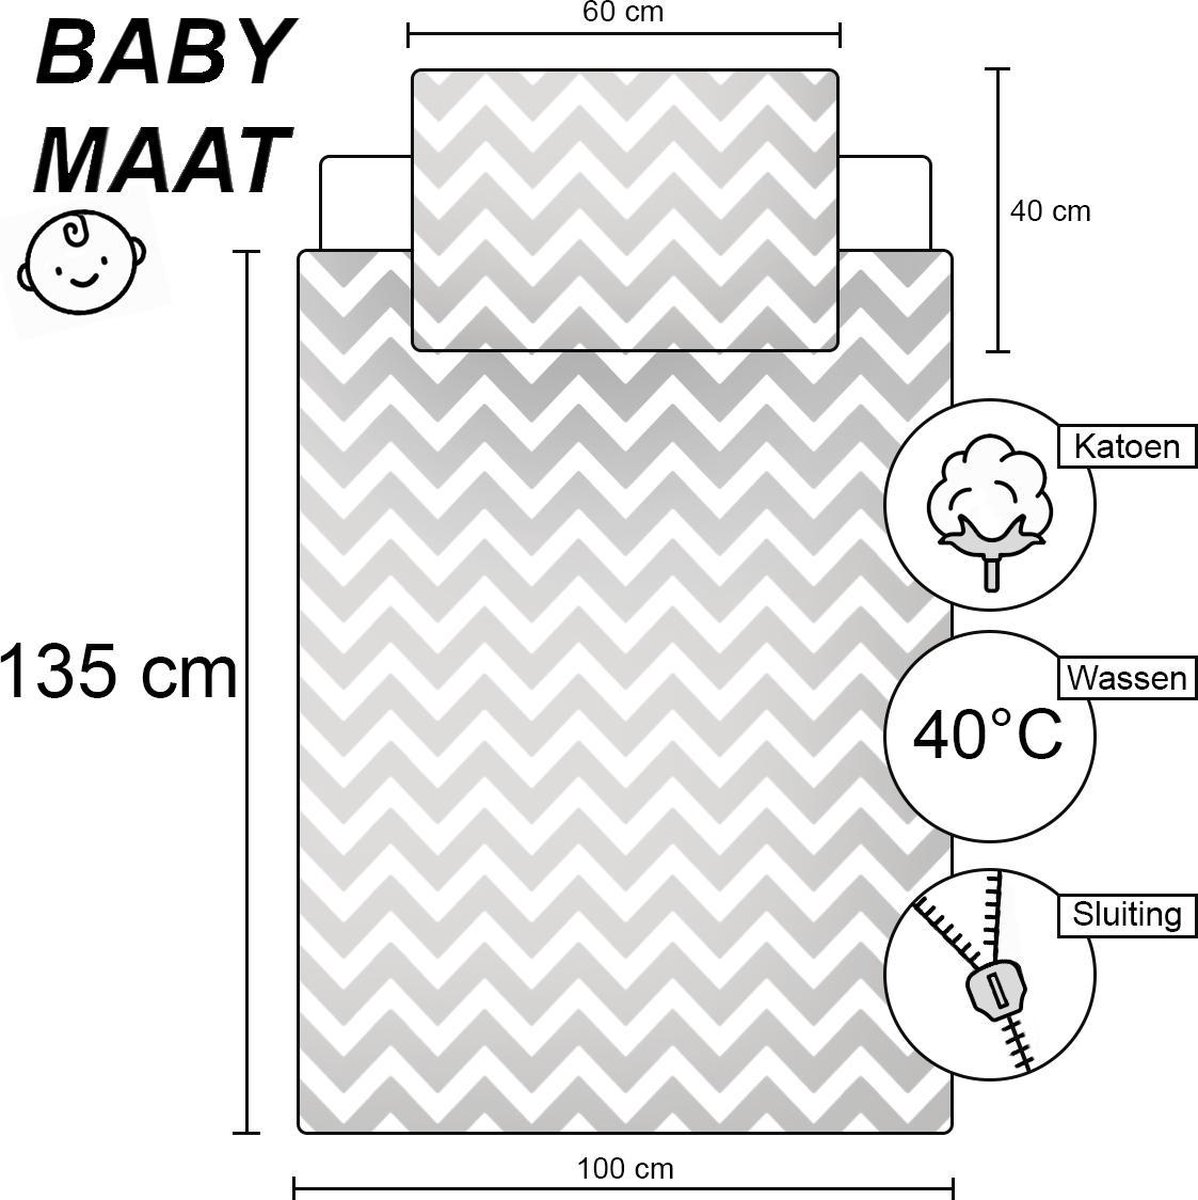 Housse de couette lit bébé - Baby Bugs - 100 x 140 cm